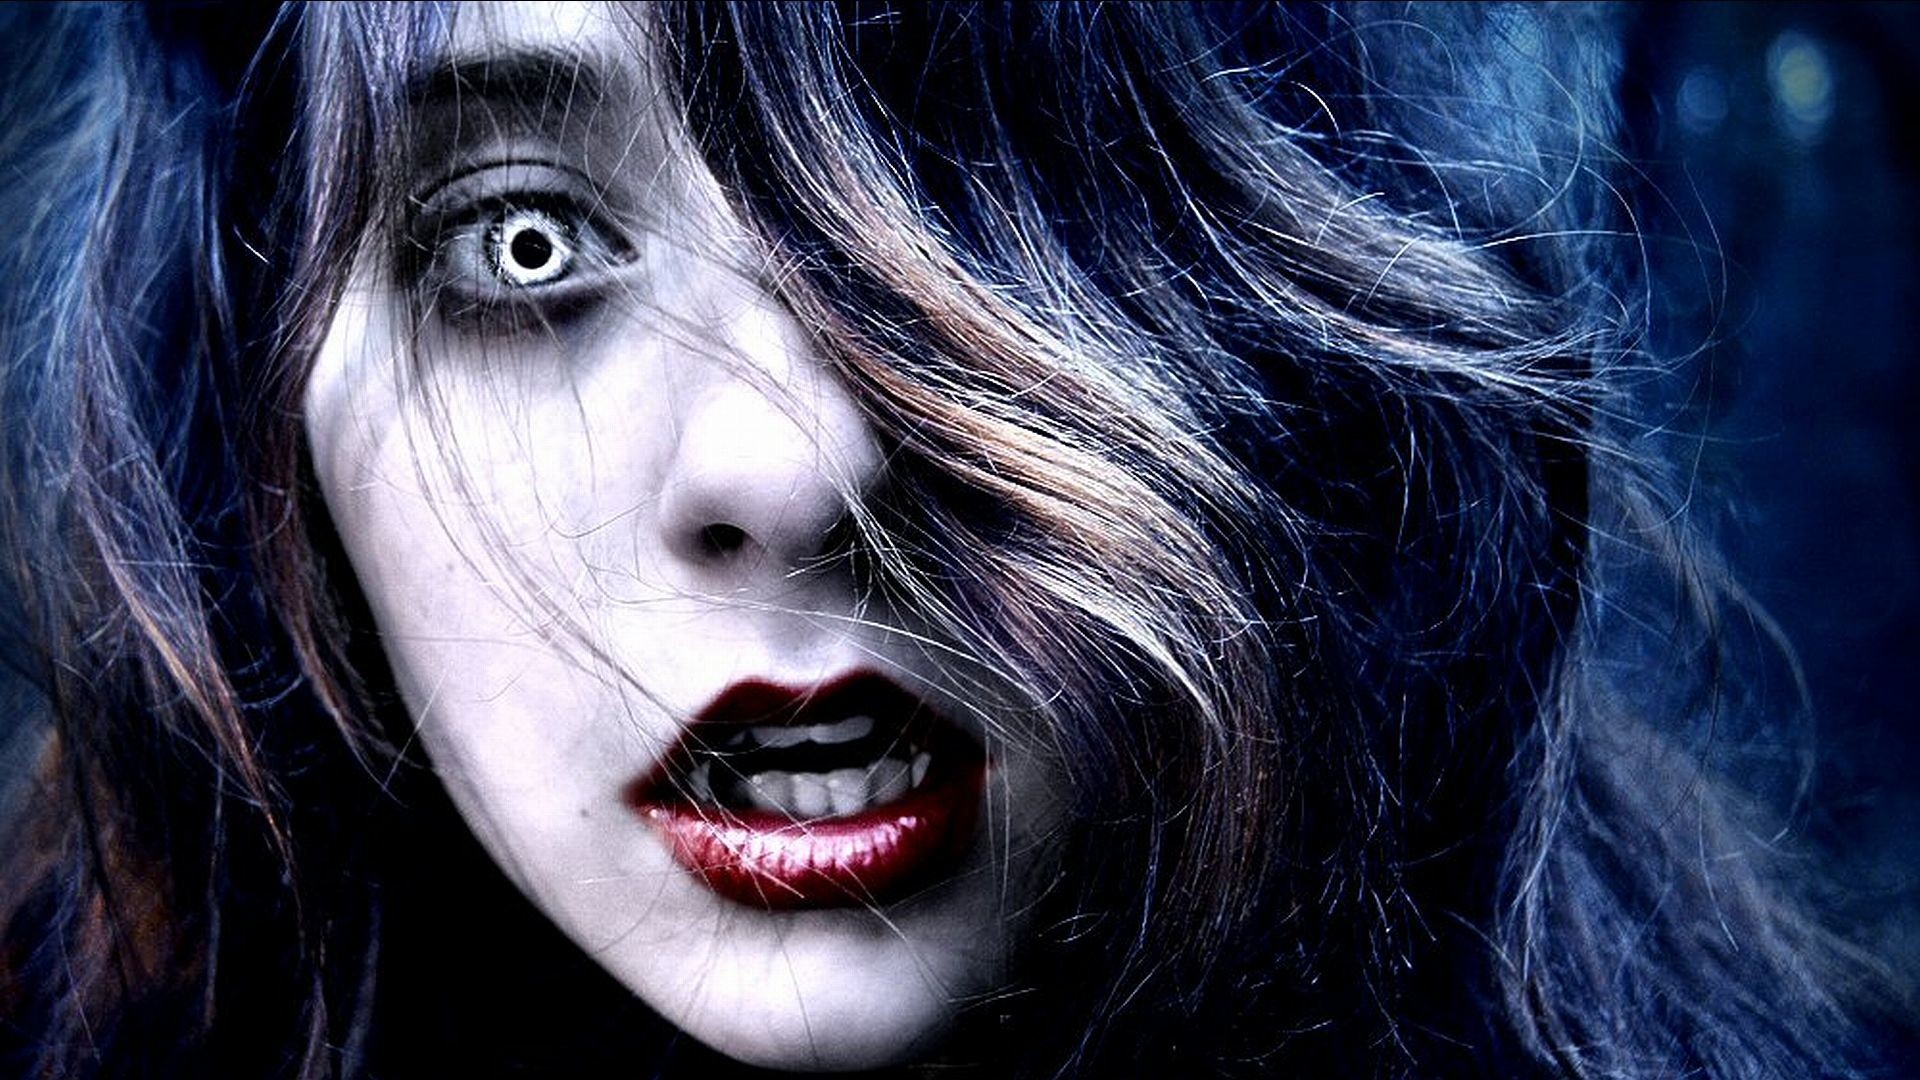 1920x1080 Image for Vampire Girl Full HD Wallpaper